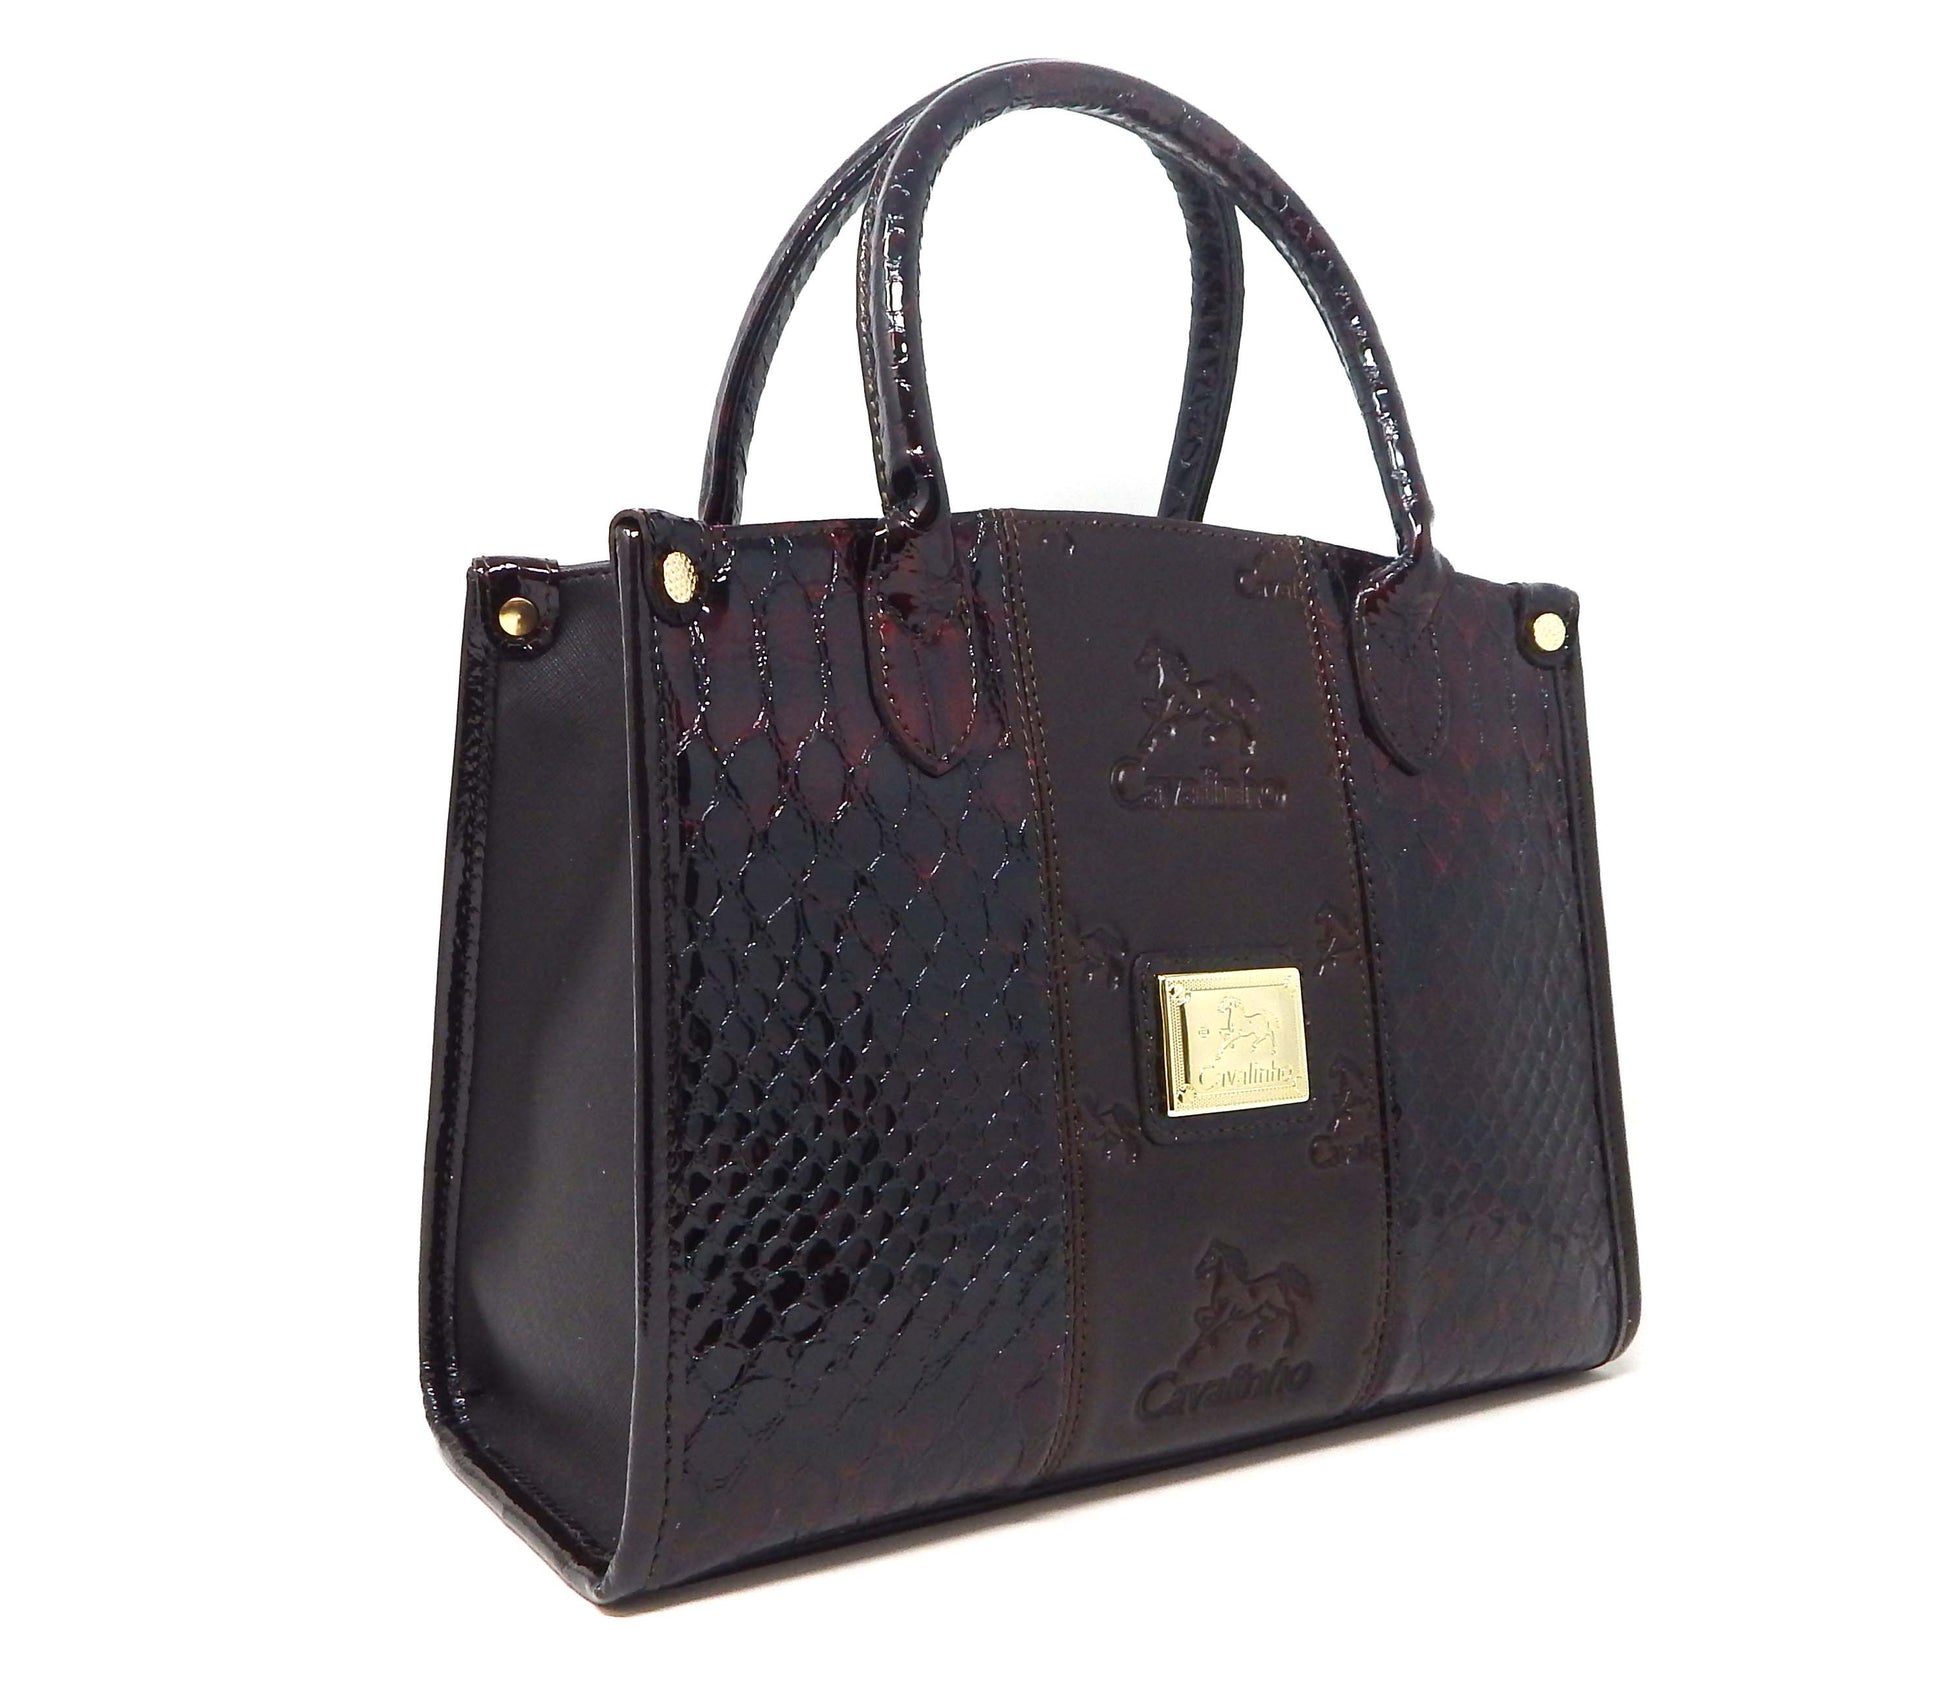 Cavalinho Honor Handbag - Brown - 18190480.02.99_2